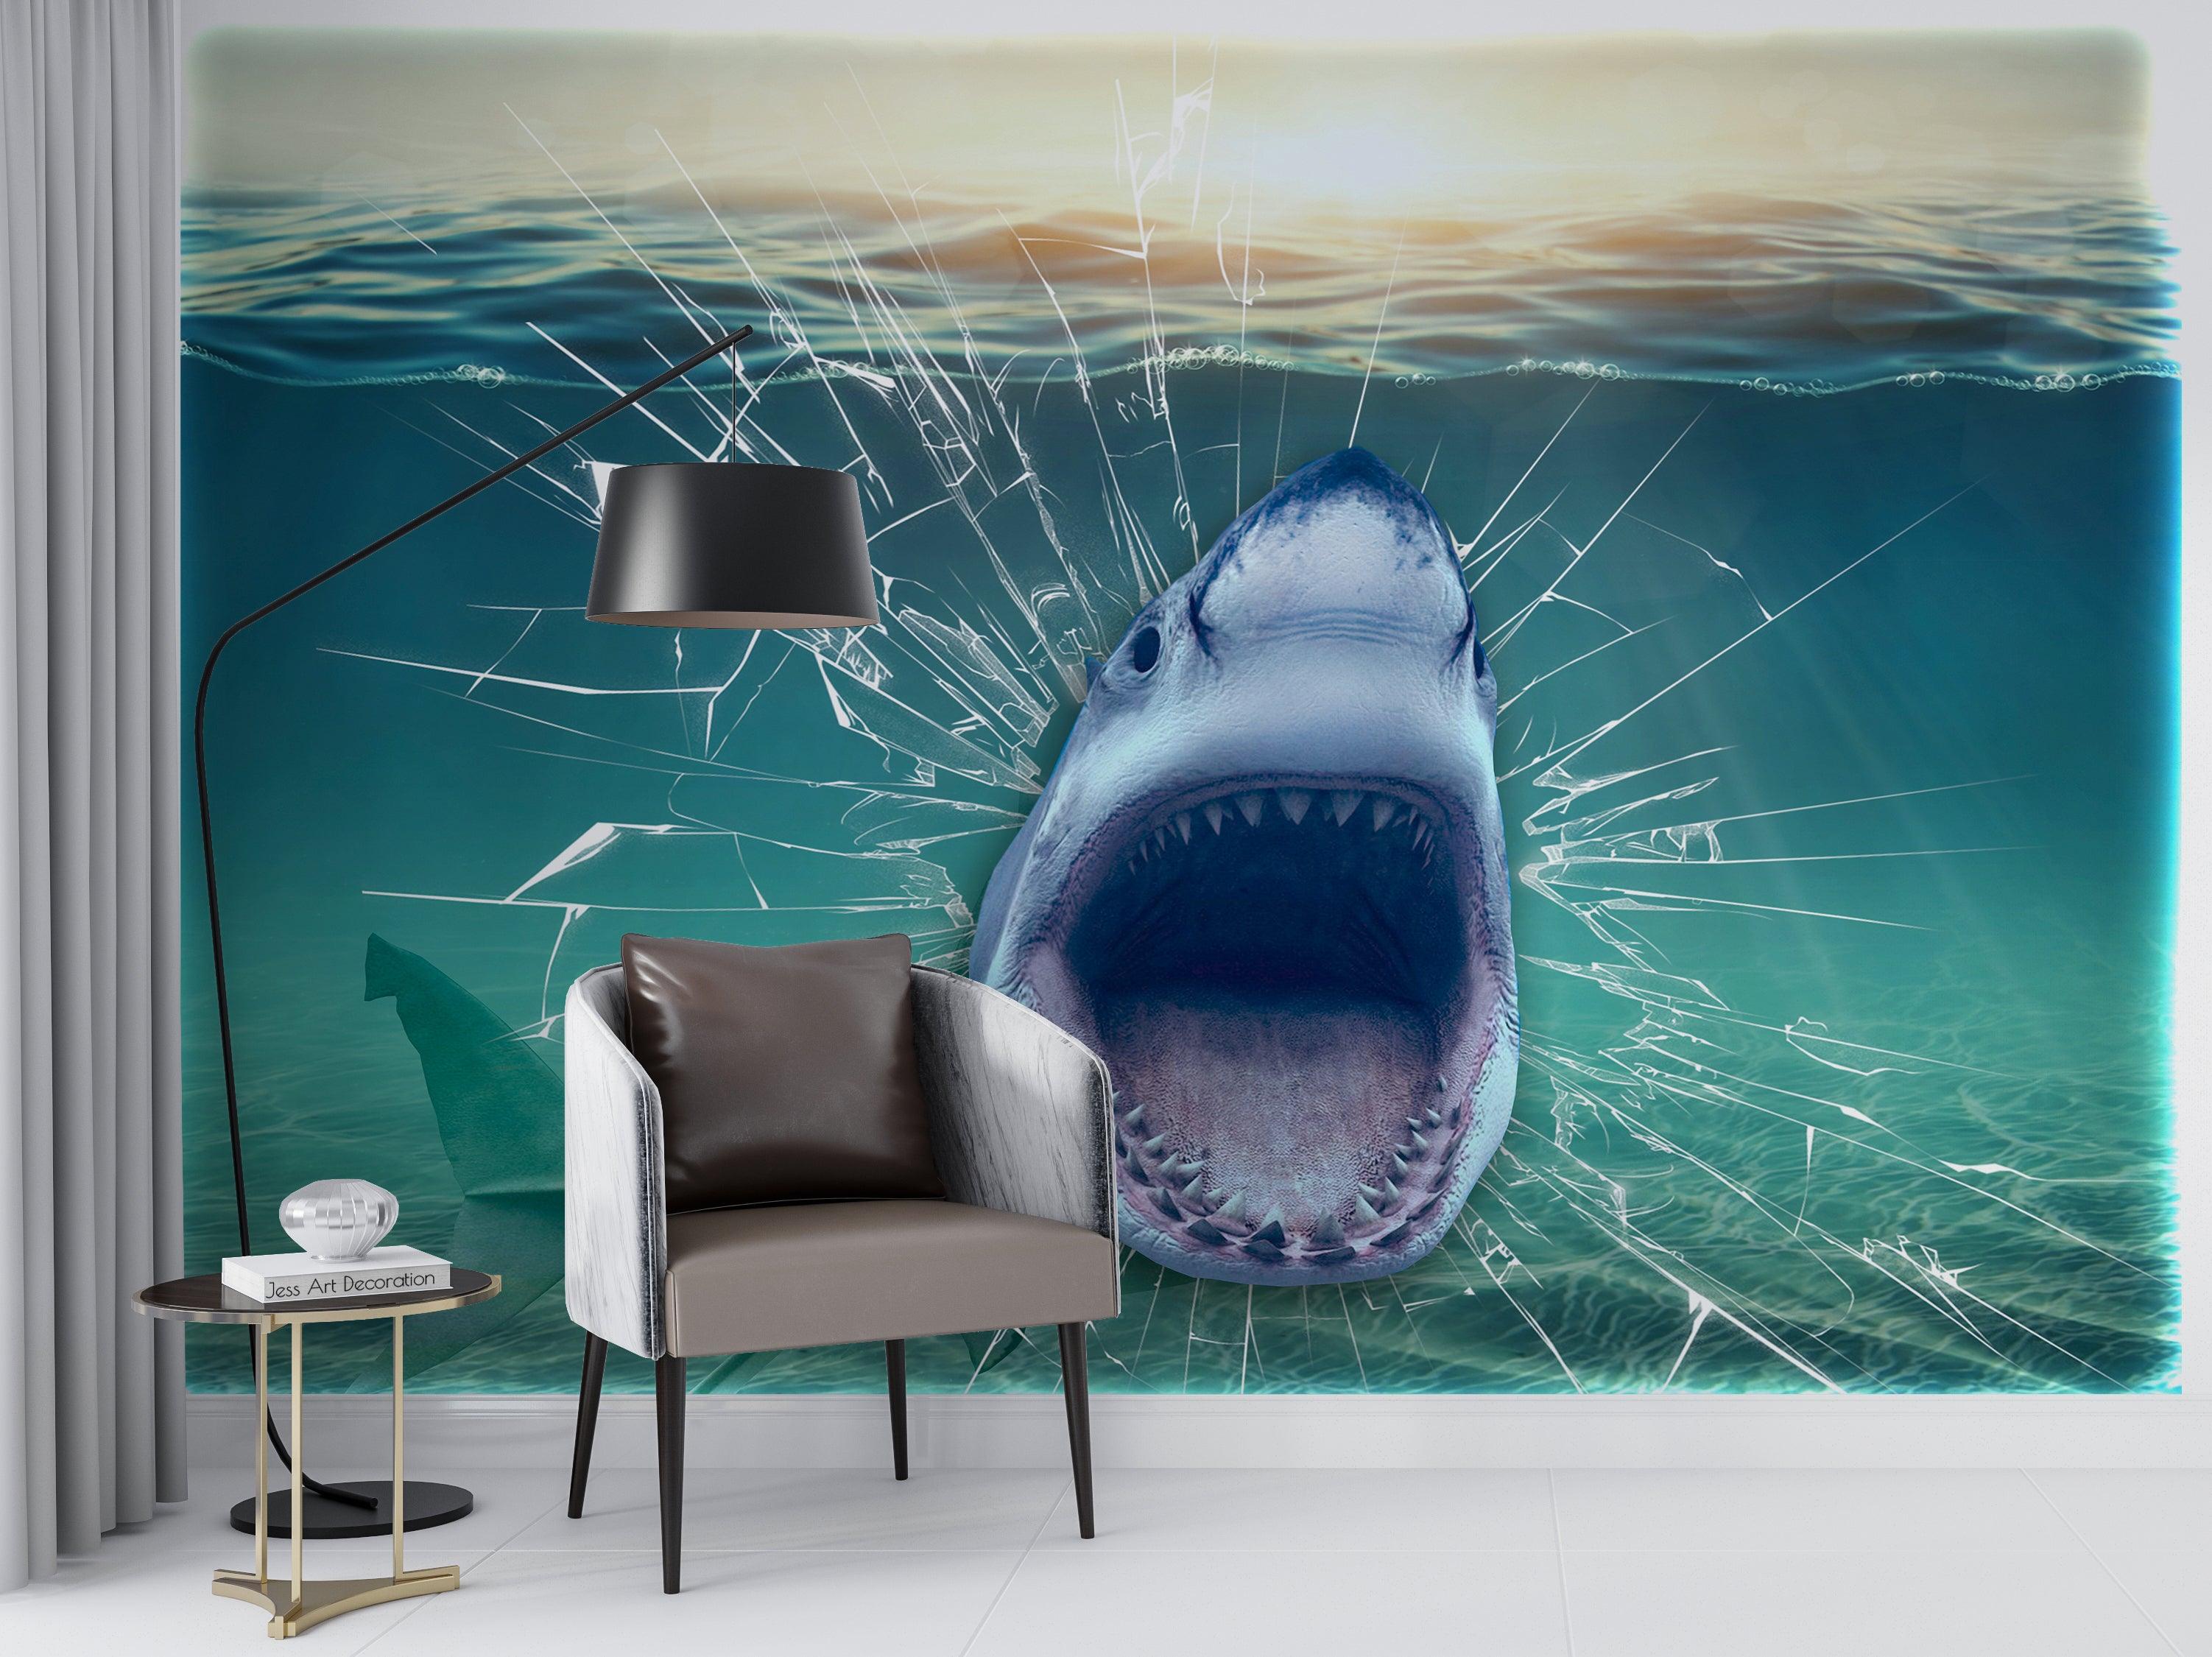 3D Glass Tank Crack Shark Mouth Wall Mural Wallpaper GD 2572- Jess Art Decoration